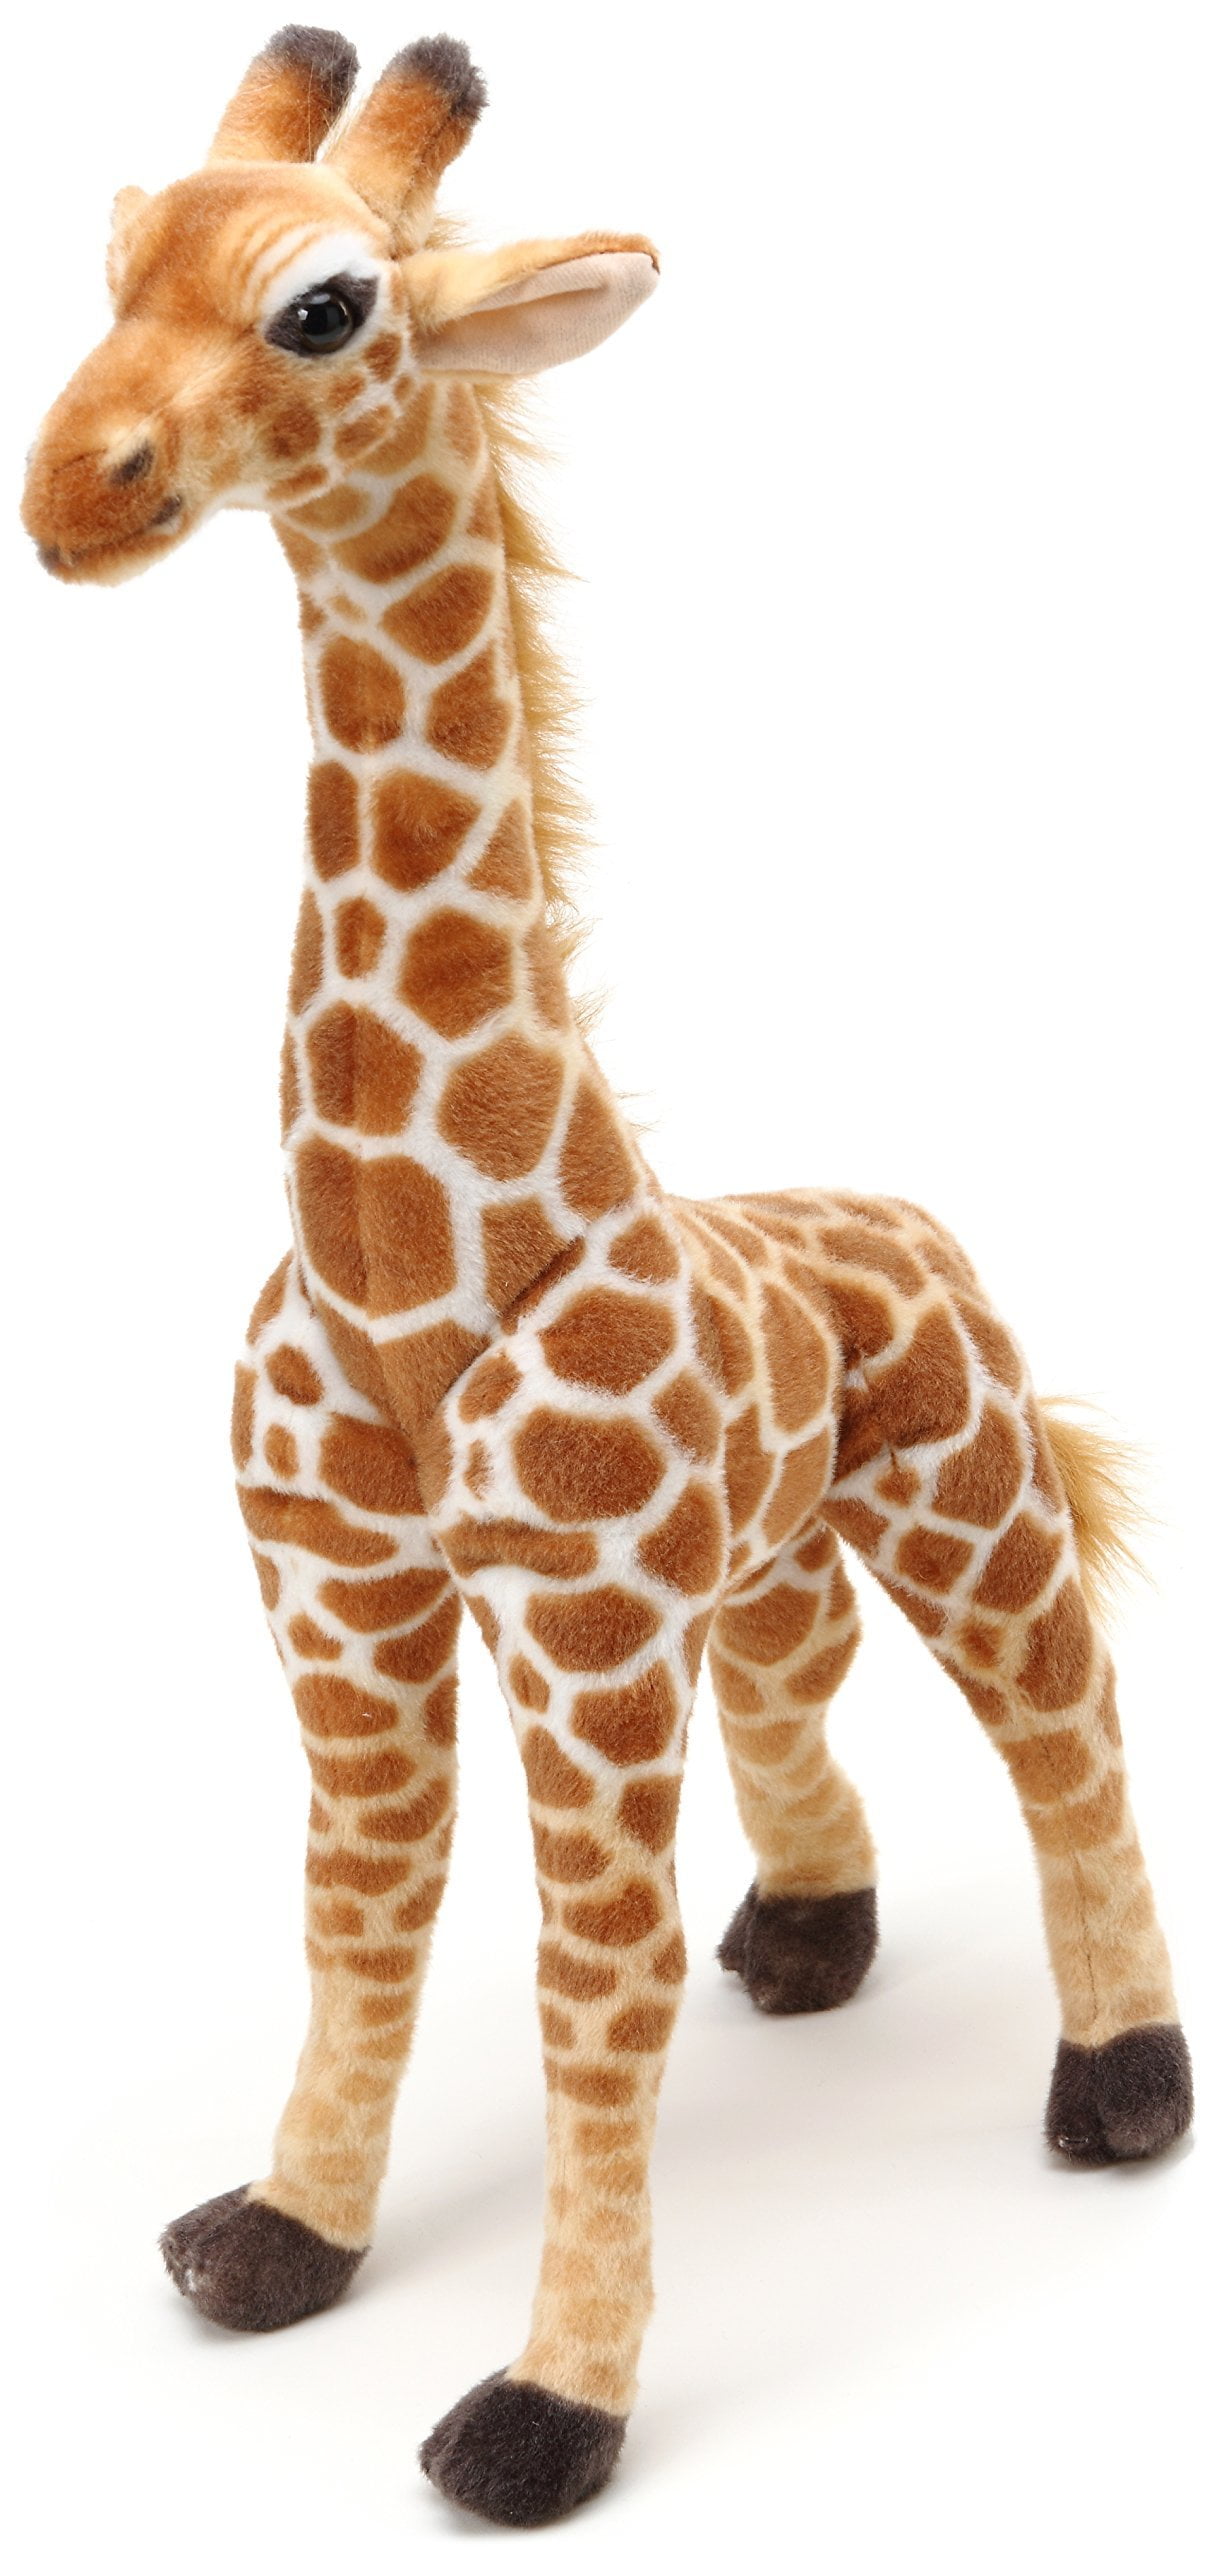 Caramel Toy Cuddle Stuffed Animal Play 25" Destination Nation Giraffe 